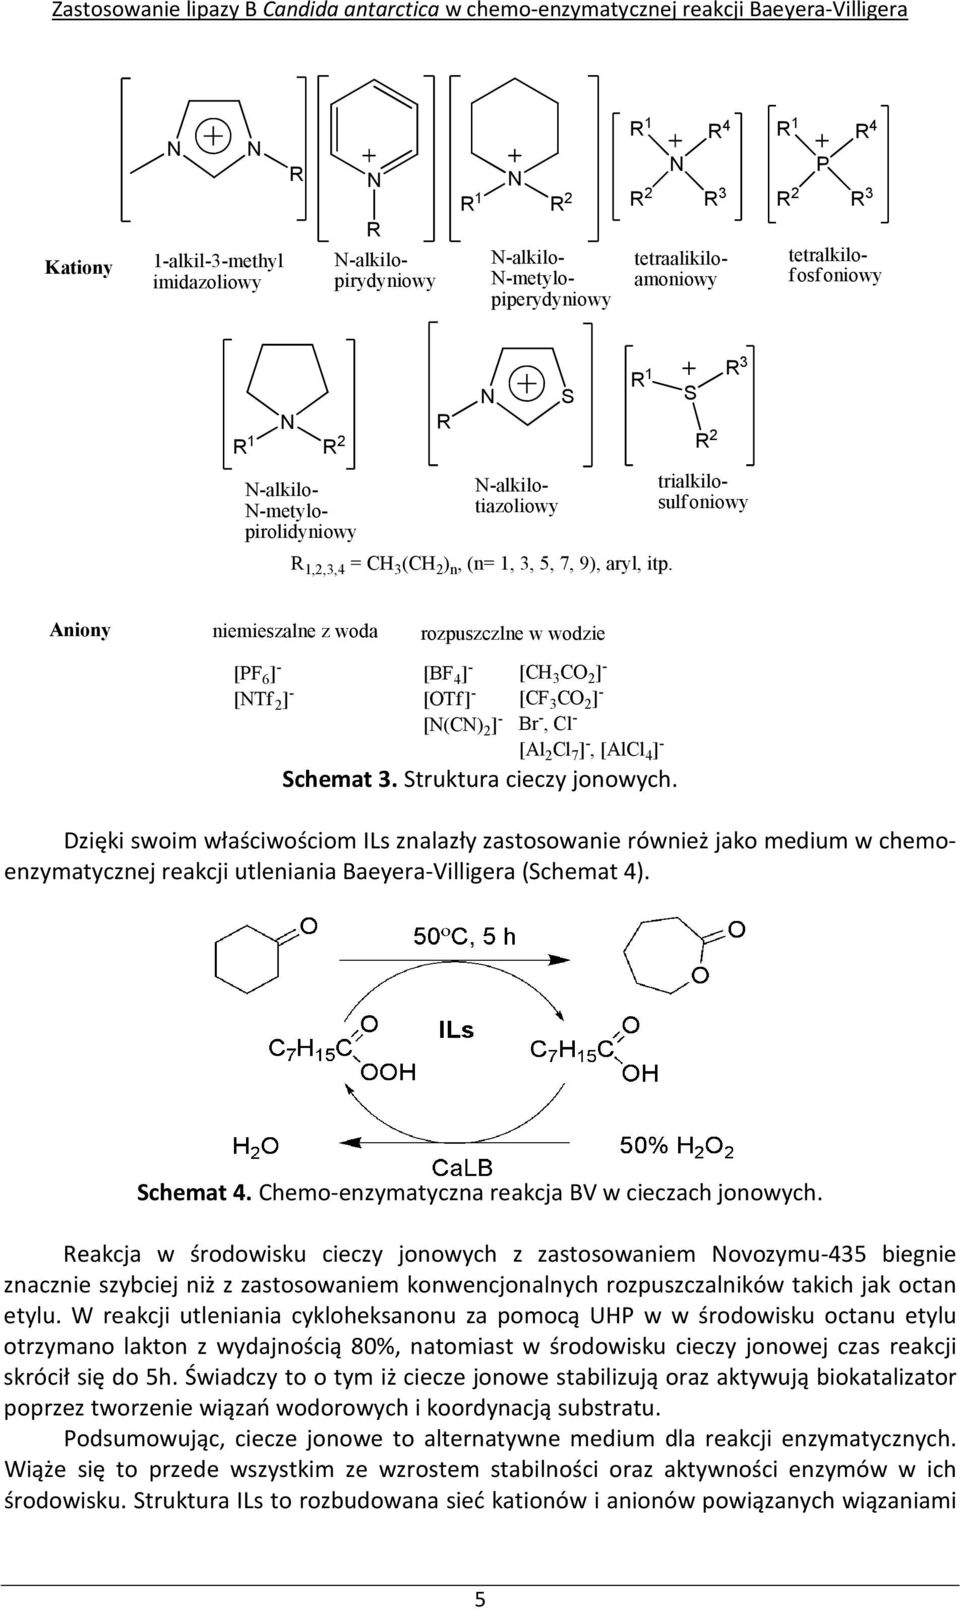 S R 2 R 3 -alkilo- -metylopirolidyniowy -alkilotiazoliowy trialkilosulfoniowy Aniony niemieszalne z woda [PF 6 ] - [BF 4 ] - [Tf 2 ] - [OTf] - rozpuszczlne w wodzie [(C) 2 ] - [CH 3 CO 2 ] - [CF 3 CO